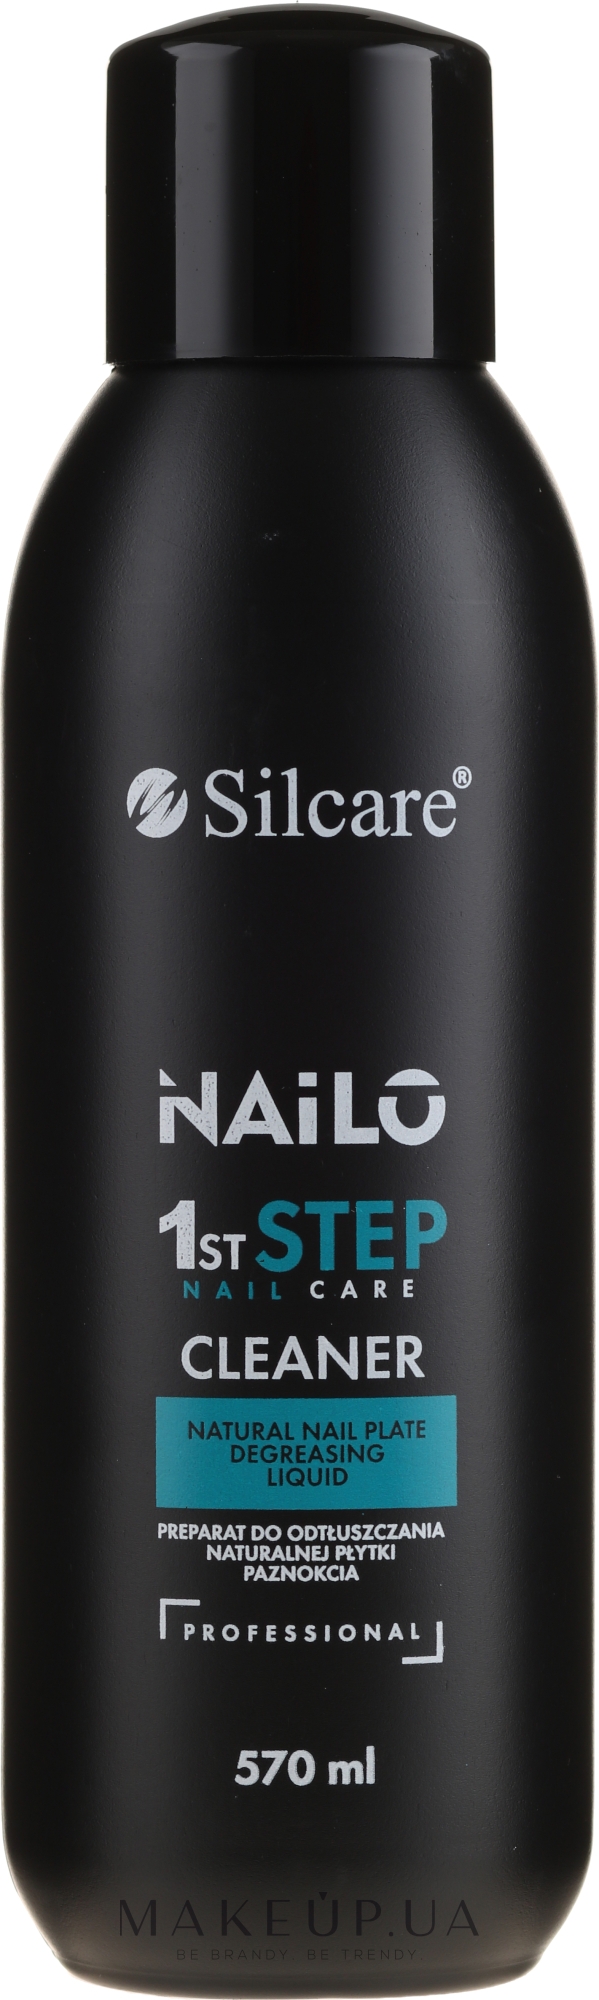 Рідина для знежирювання нігтьової пластини - Silcare Nailo 1st Step Nail Cleaner — фото 570ml